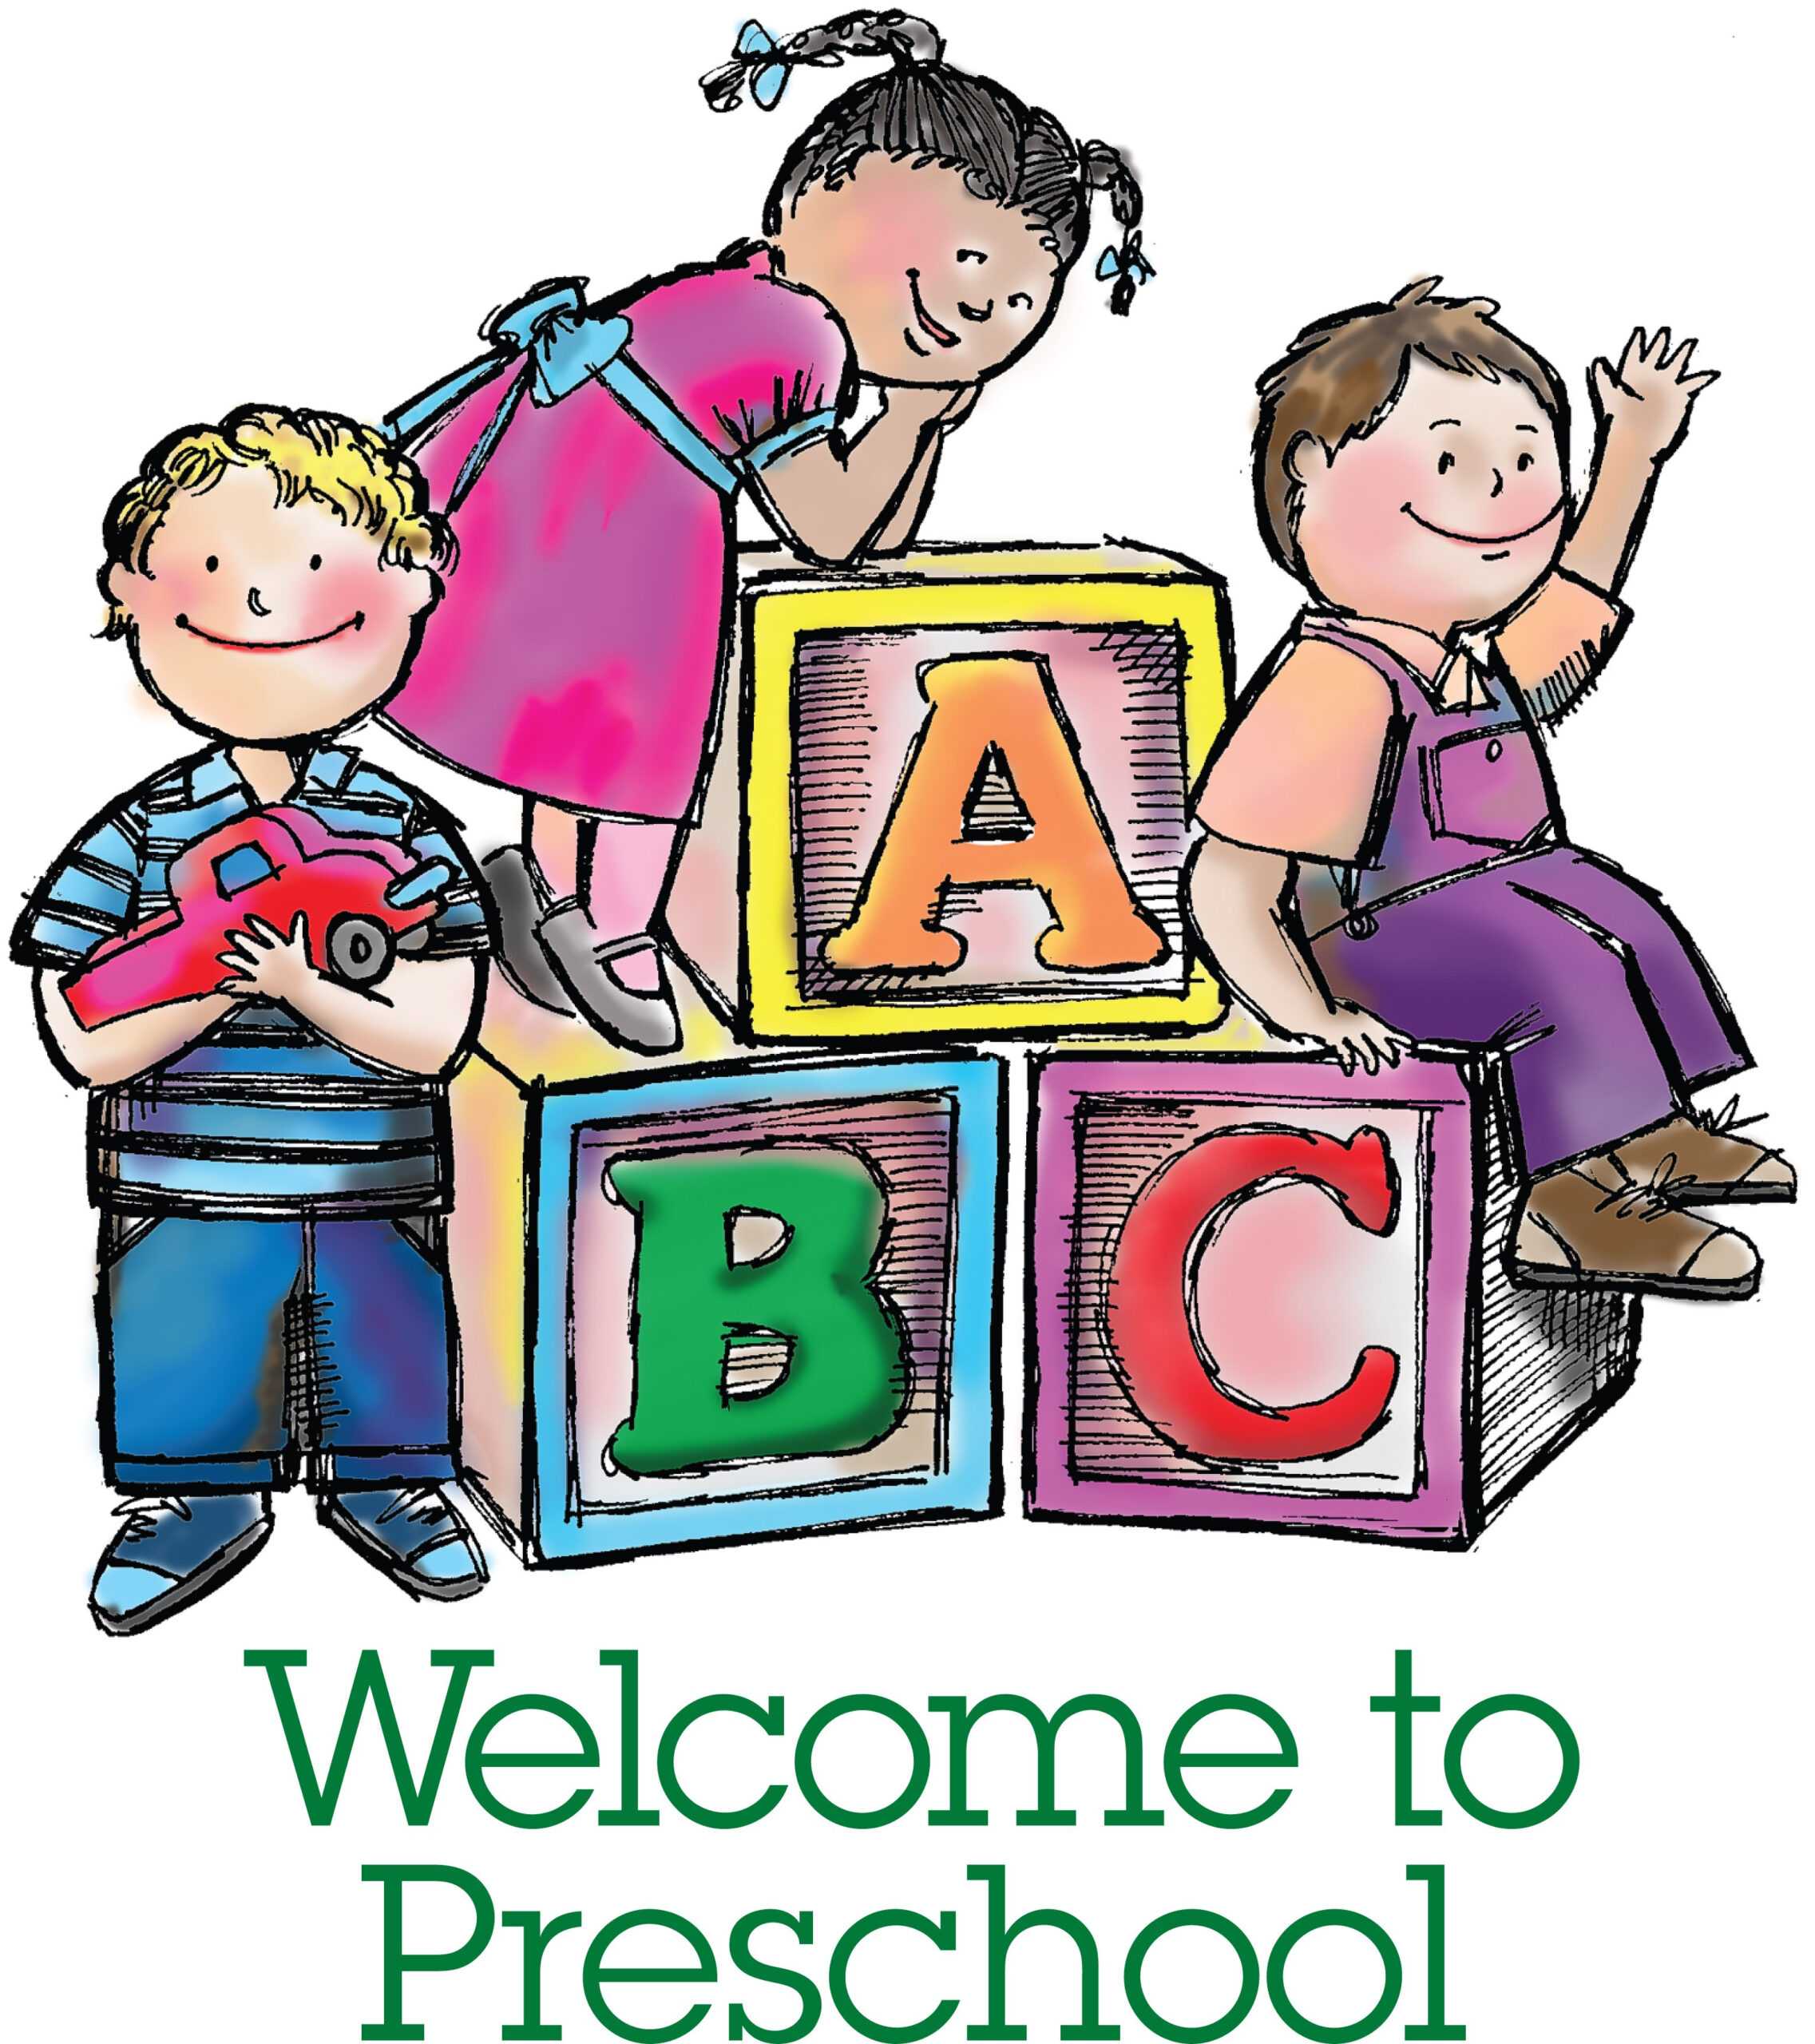 Play School Brochure Templates Unique Free Nursery School With Play School Brochure Templates